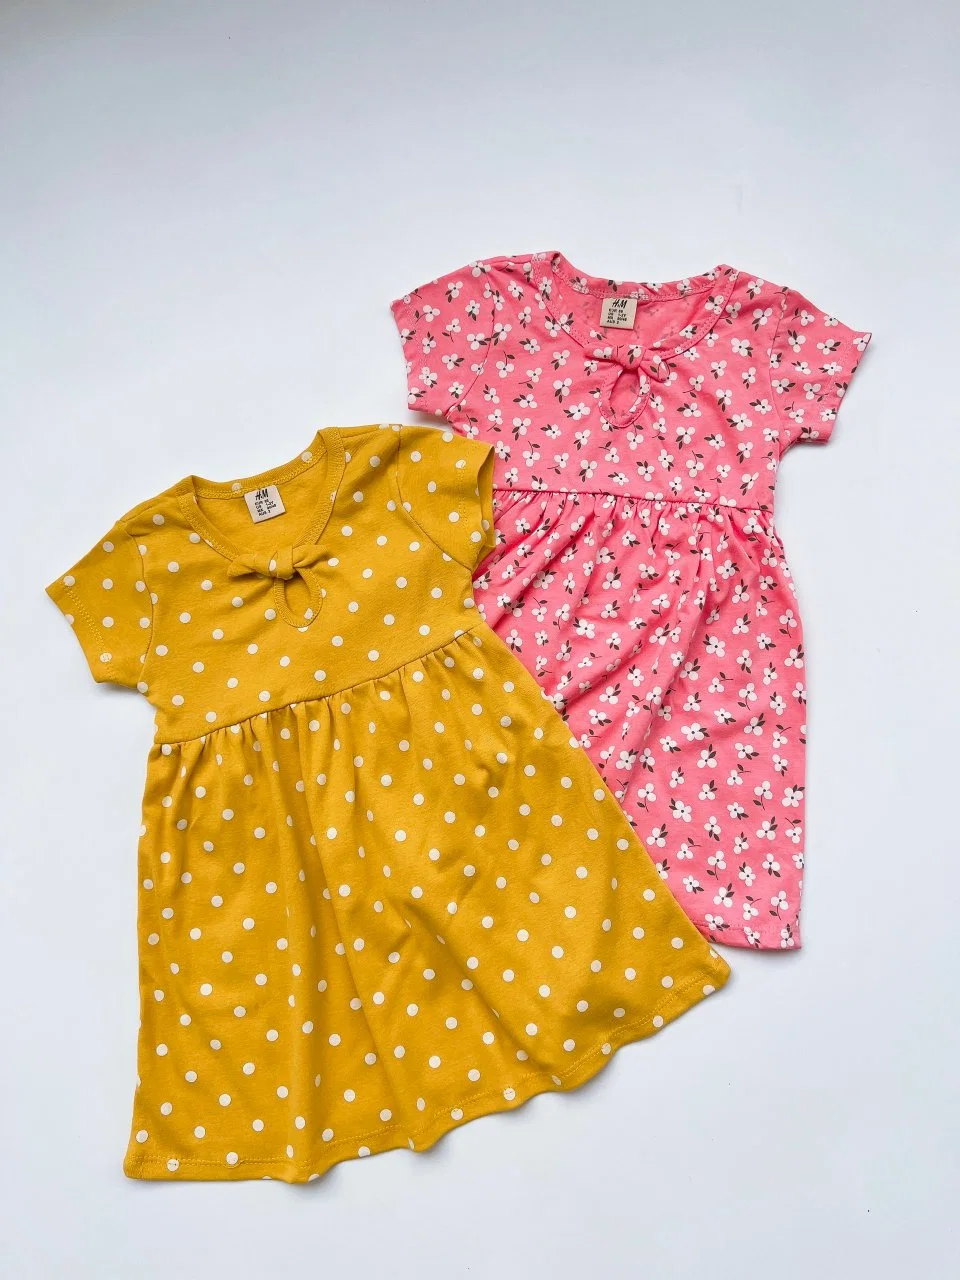 Mädchen Kleid Blumen Kinder Kleidung Großhandel/Lieferant Kinder Mode Kleidung Bulk Versorgung China Fabrik für Kinder Kleidung